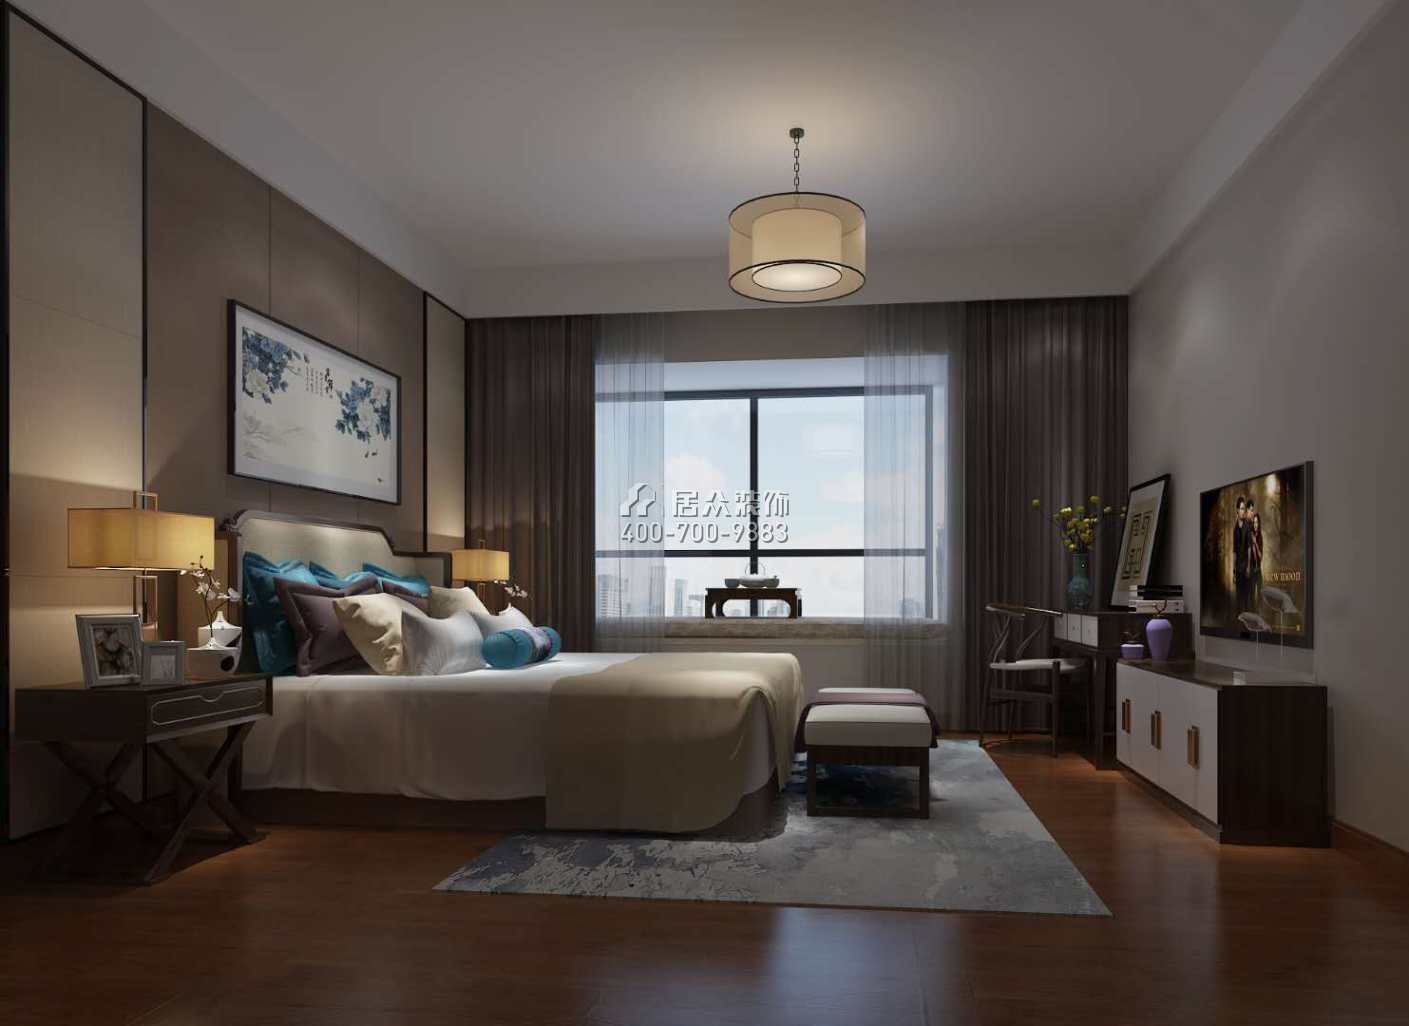 朝南凯旋汇224平方米中式风格平层户型卧室装修效果图